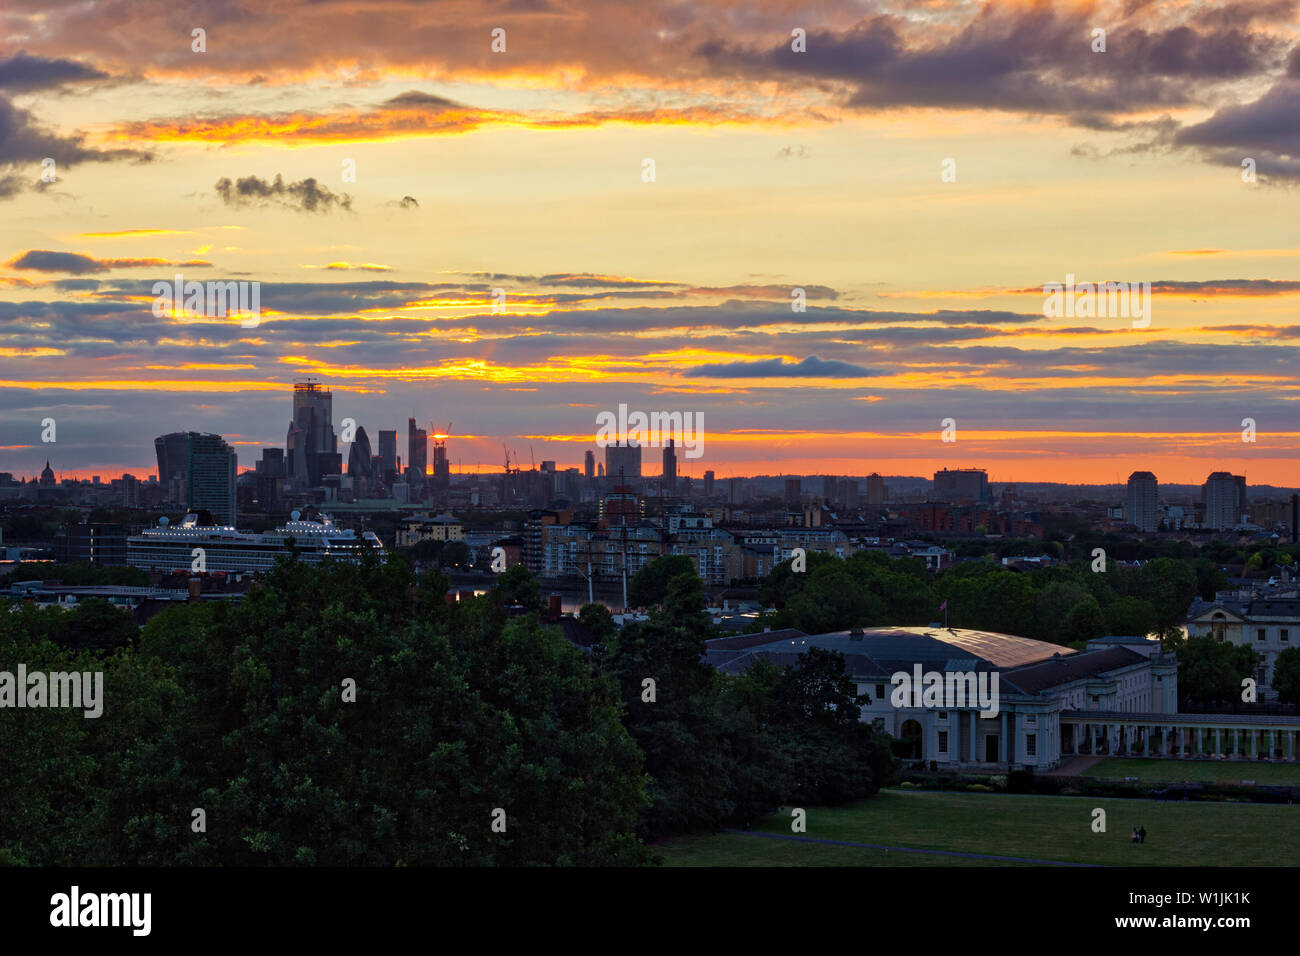 Tempo britannico: Sequenza di immagini di un tramonto sullo skyline di Londra da Greenwich Park , Inghilterra, Regno Unito Foto Stock